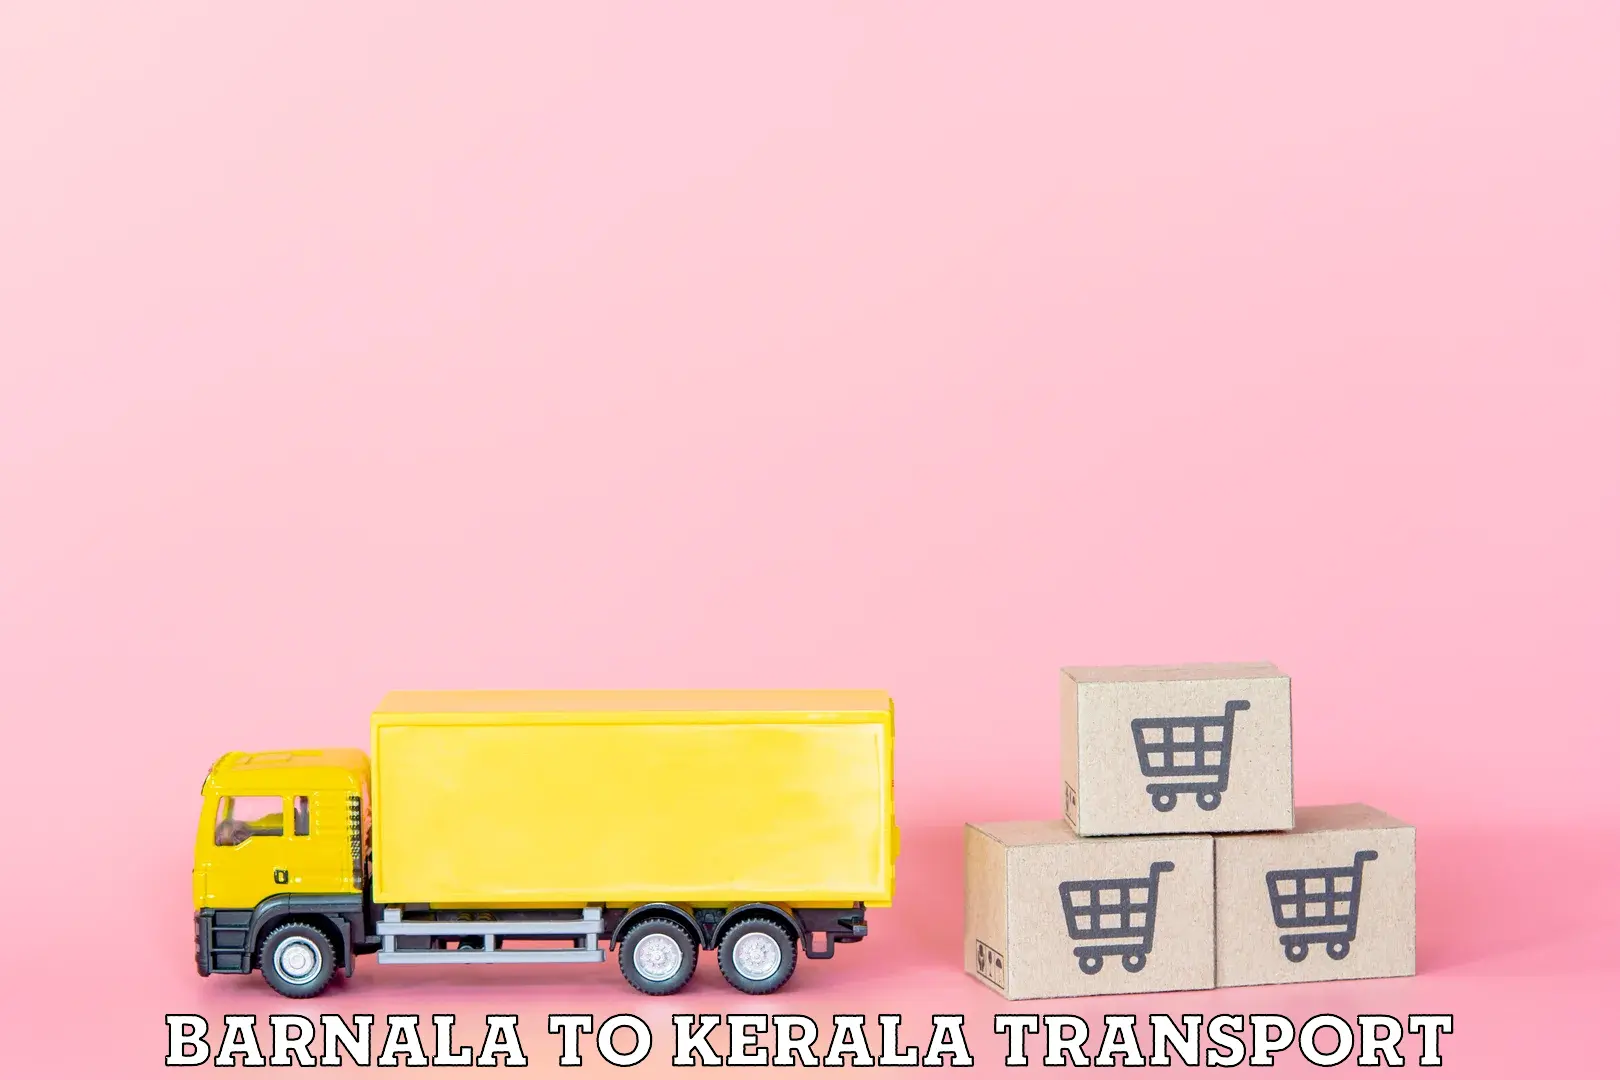 Nearby transport service Barnala to Kalanjoor